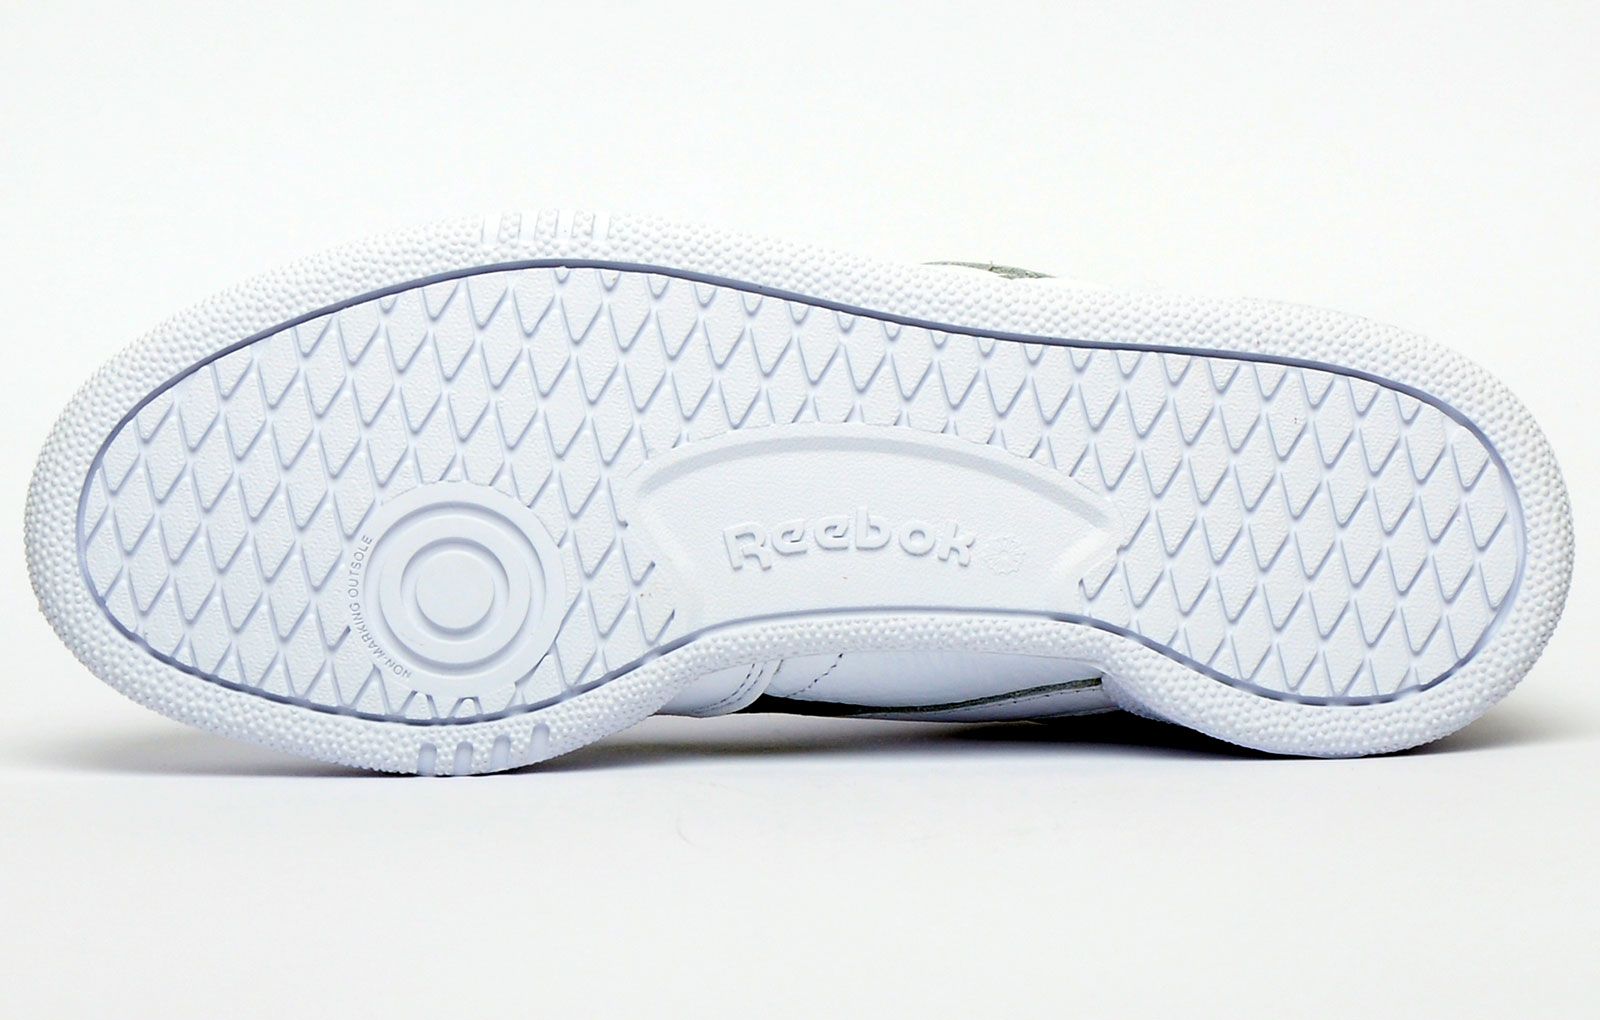 Reebok heeft deze premium leren sneaker ontworpen met overlays die superieure stabiliteit en bewegingscontrole over de hele voet bieden.